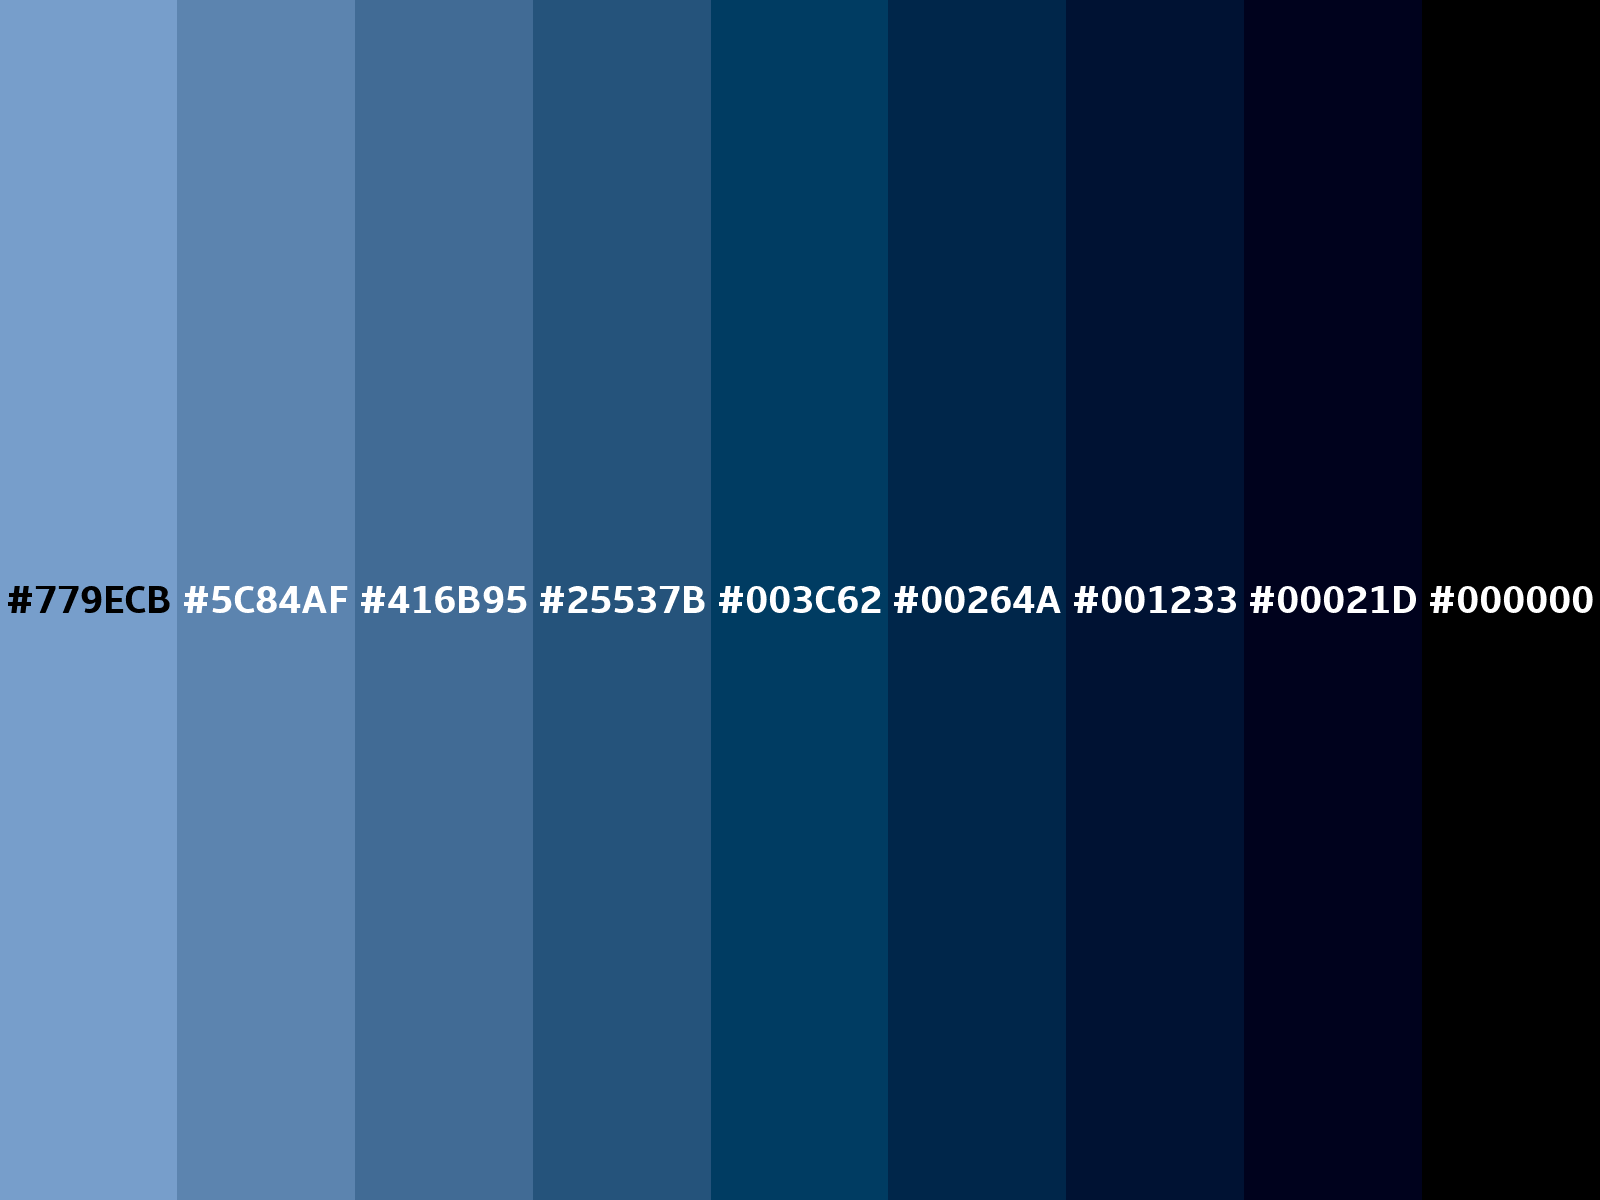 Dark pastel blue color (RGB 119, 158, 203)